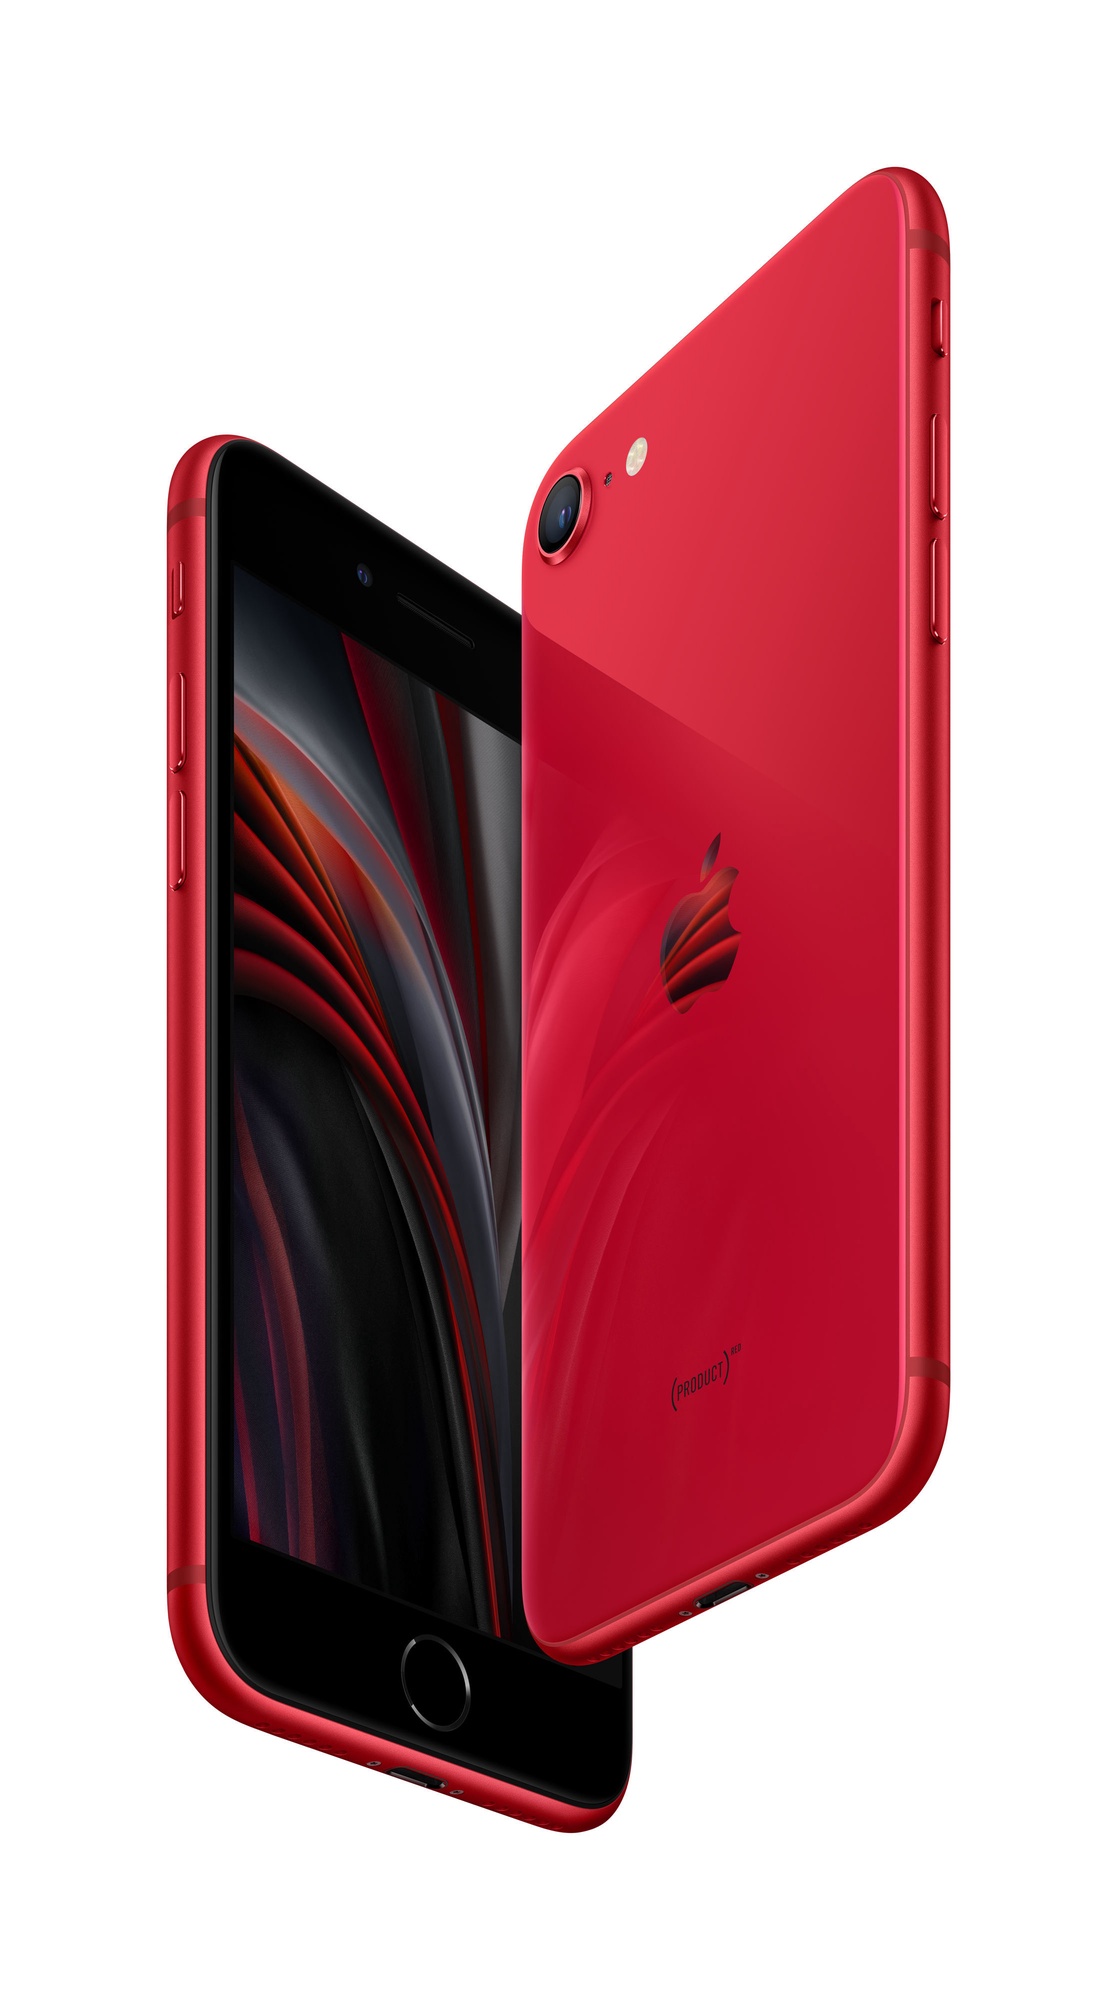 Apple iPhone SE 64GB (PRODUCT)RED Senukai.lt